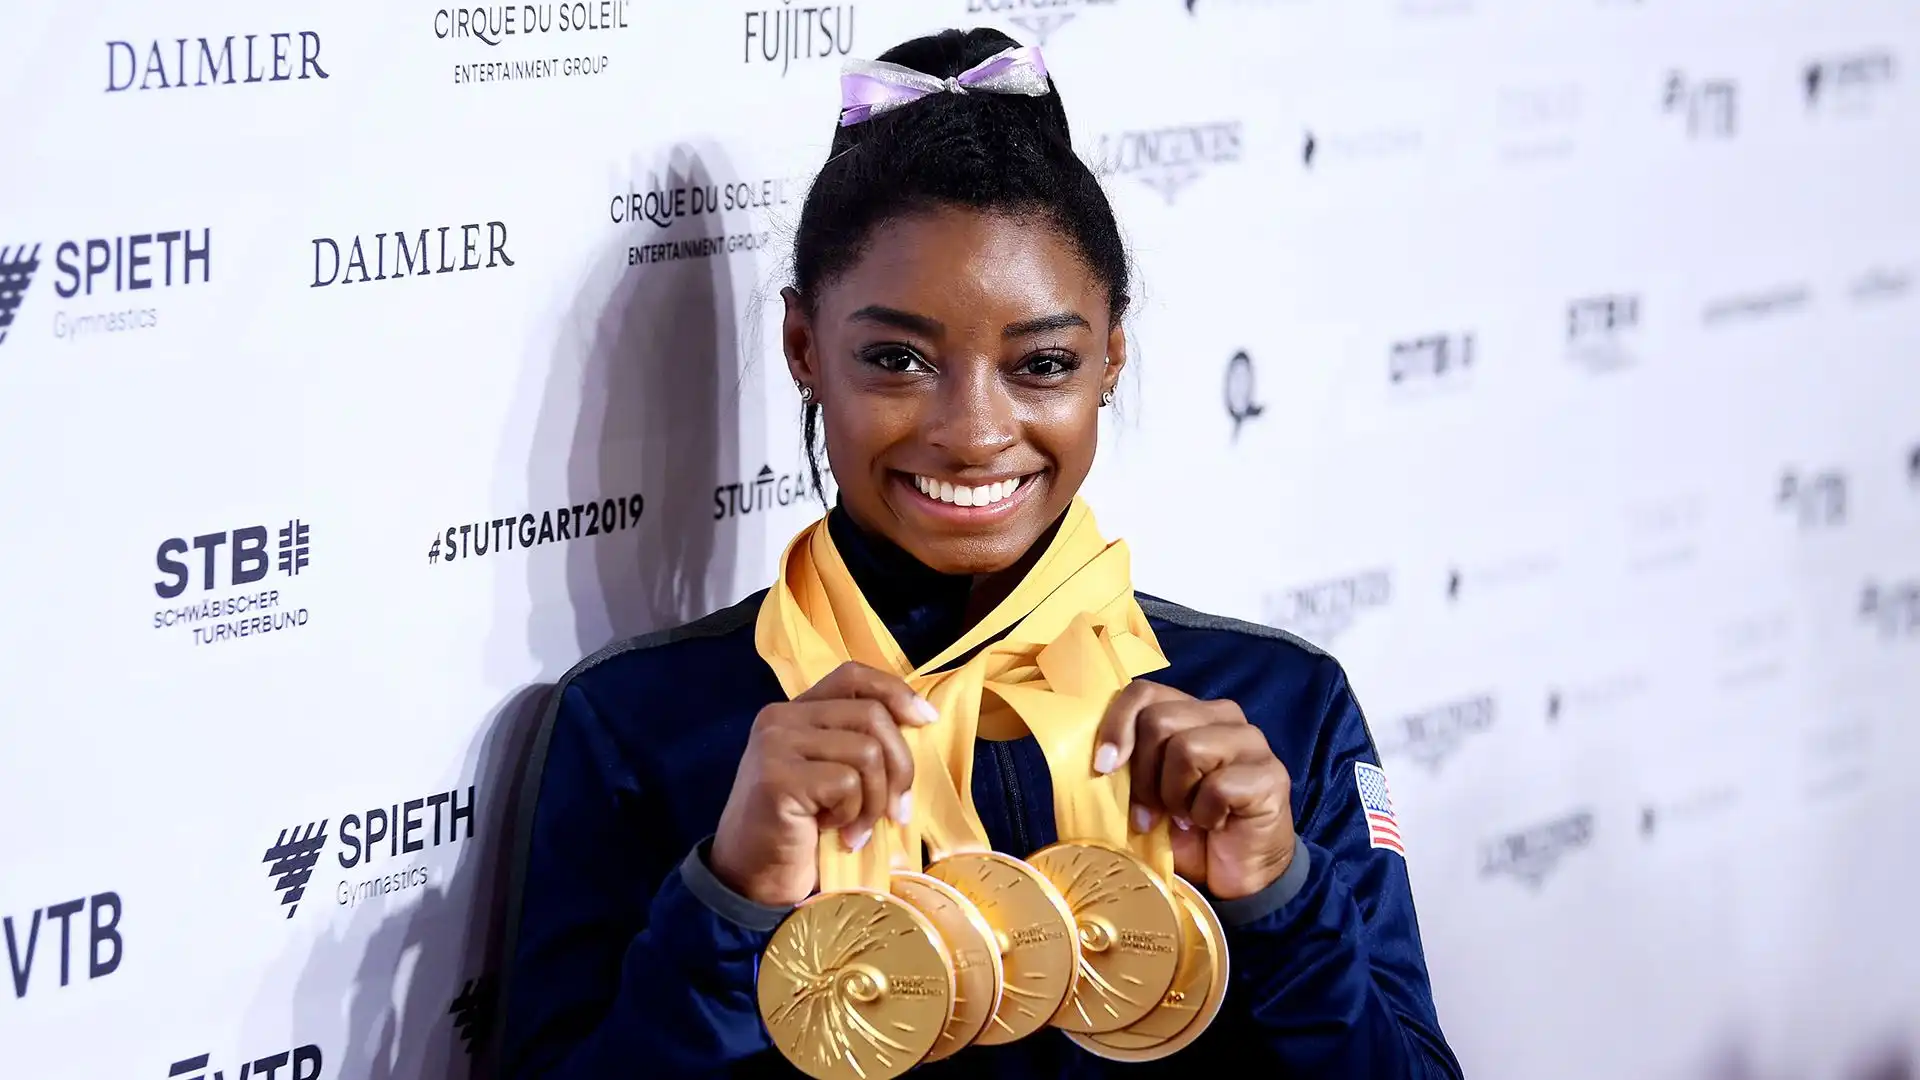 Ha rappresentato gli Stati Uniti ai Giochi Olimpici di Rio de Janeiro nel 2016, vincendo 4 medaglie d'oro e 1 di bronzo.